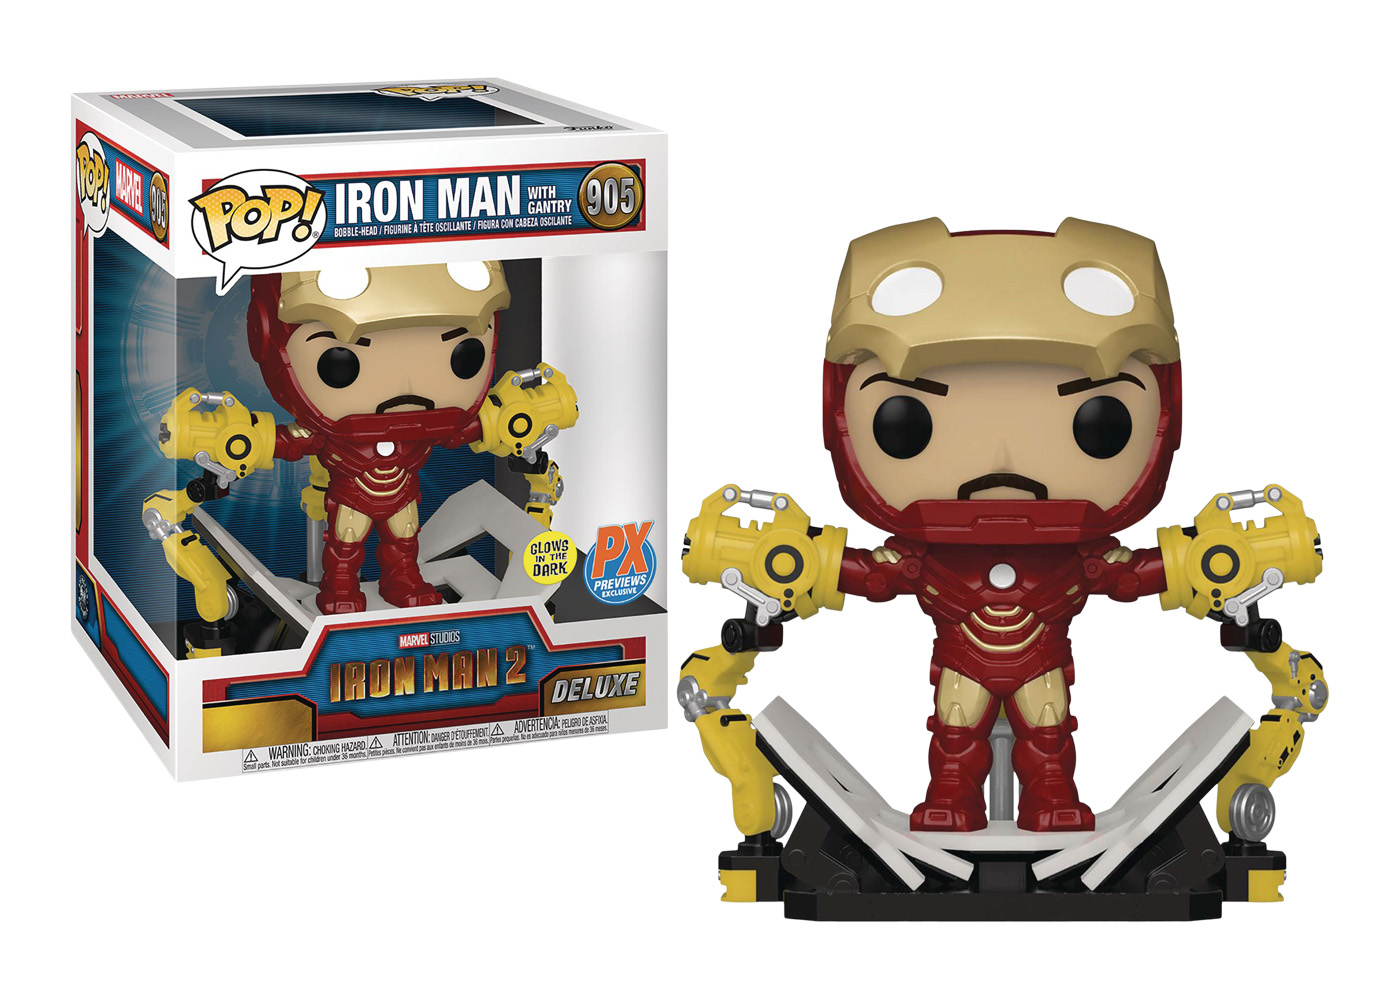 Funko Pop! Marvel Iron Man 2 Iron Man with Gantry (Glow) Deluxe PX 